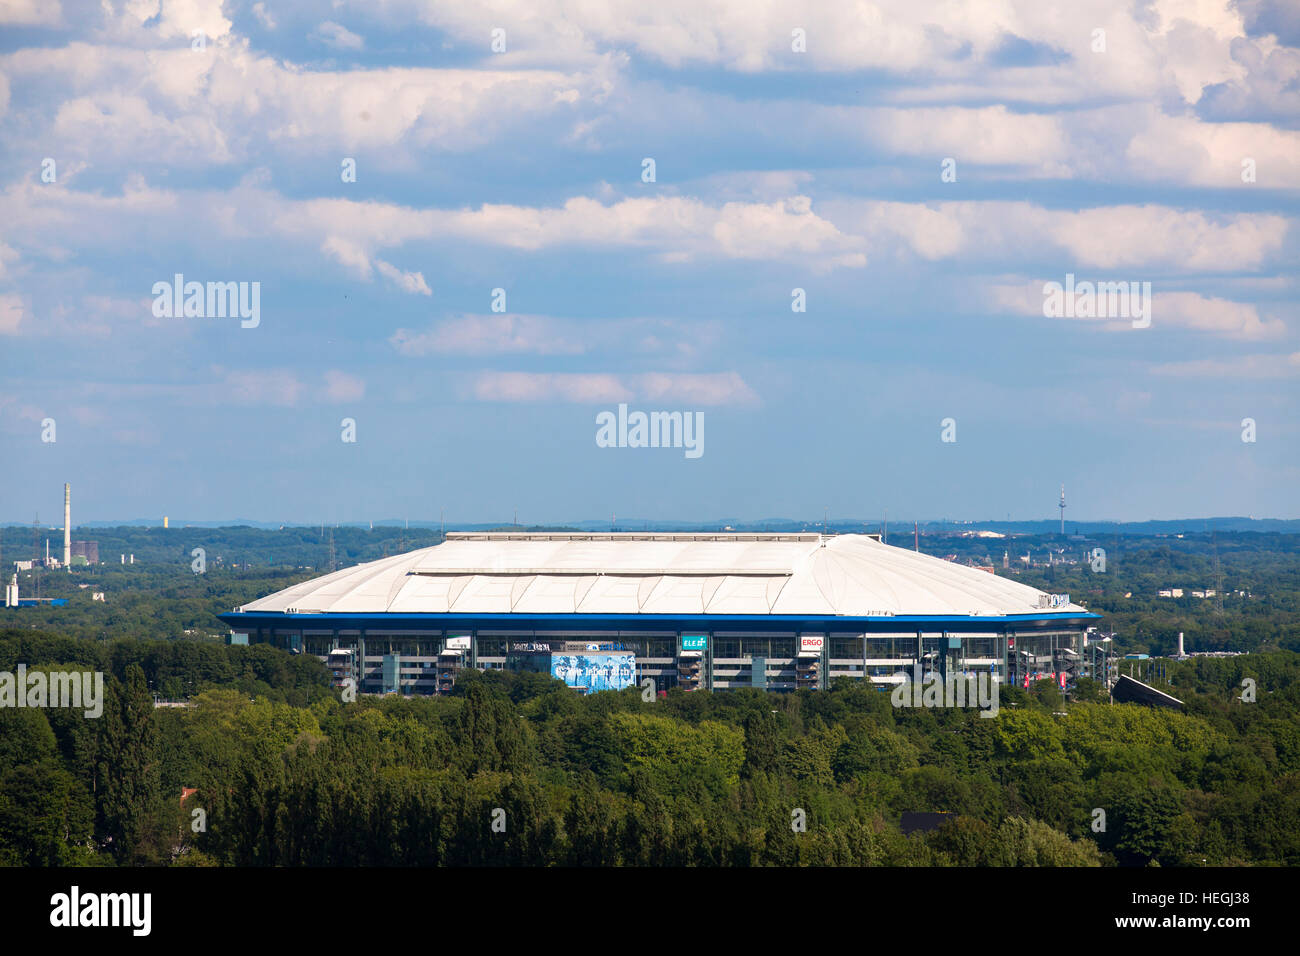 Germania, Gelsenkirchen, il soccer stadium Veltins-Arena, Arena Auf Schalke. Foto Stock